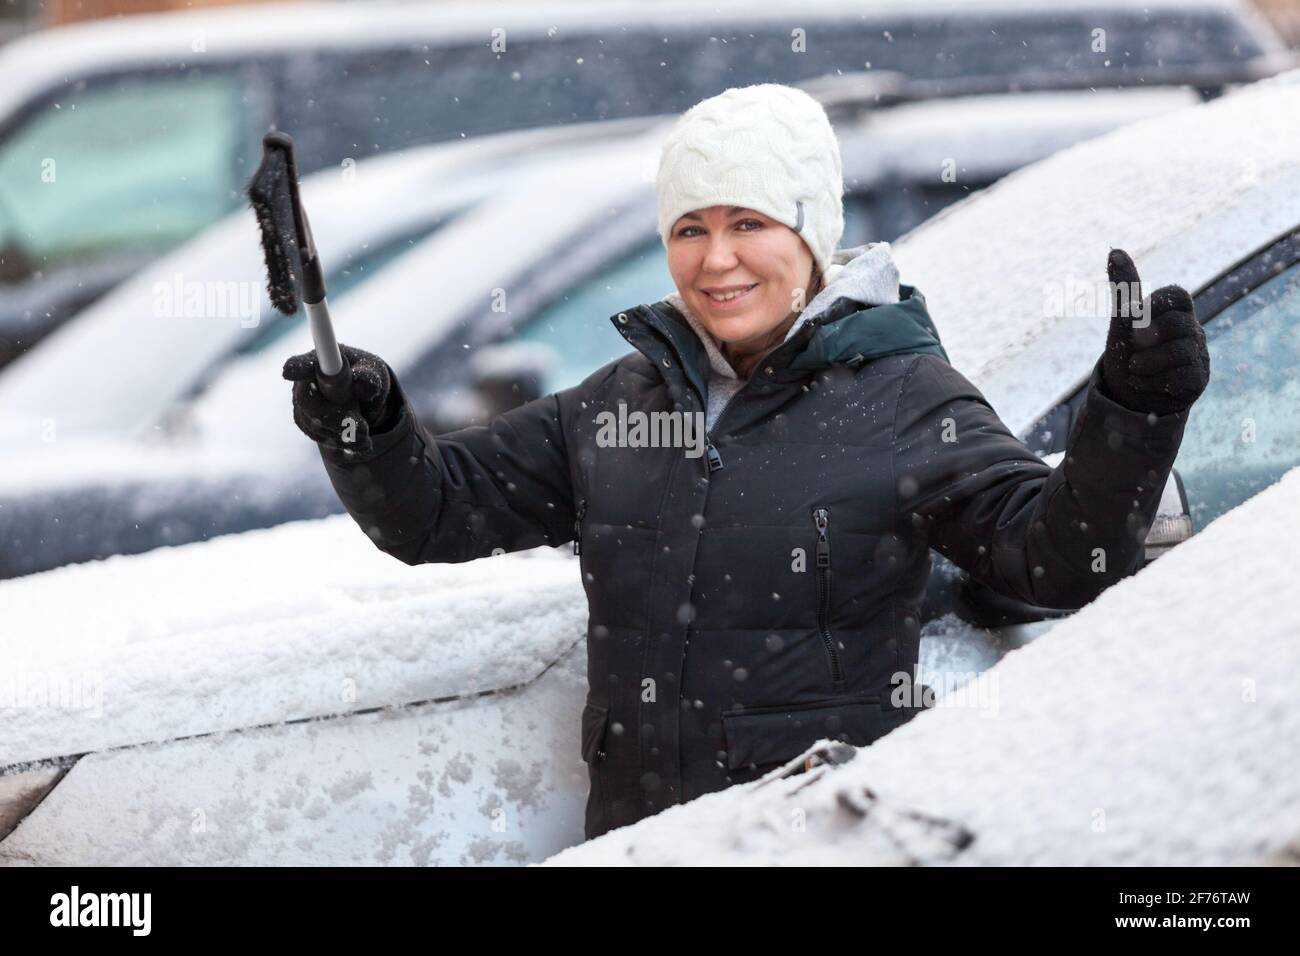 Frau bereit, ihren verschneiten Wagen nach Schneesturm zu reinigen, lächelnd und zeigt den Daumen nach oben Stockfoto